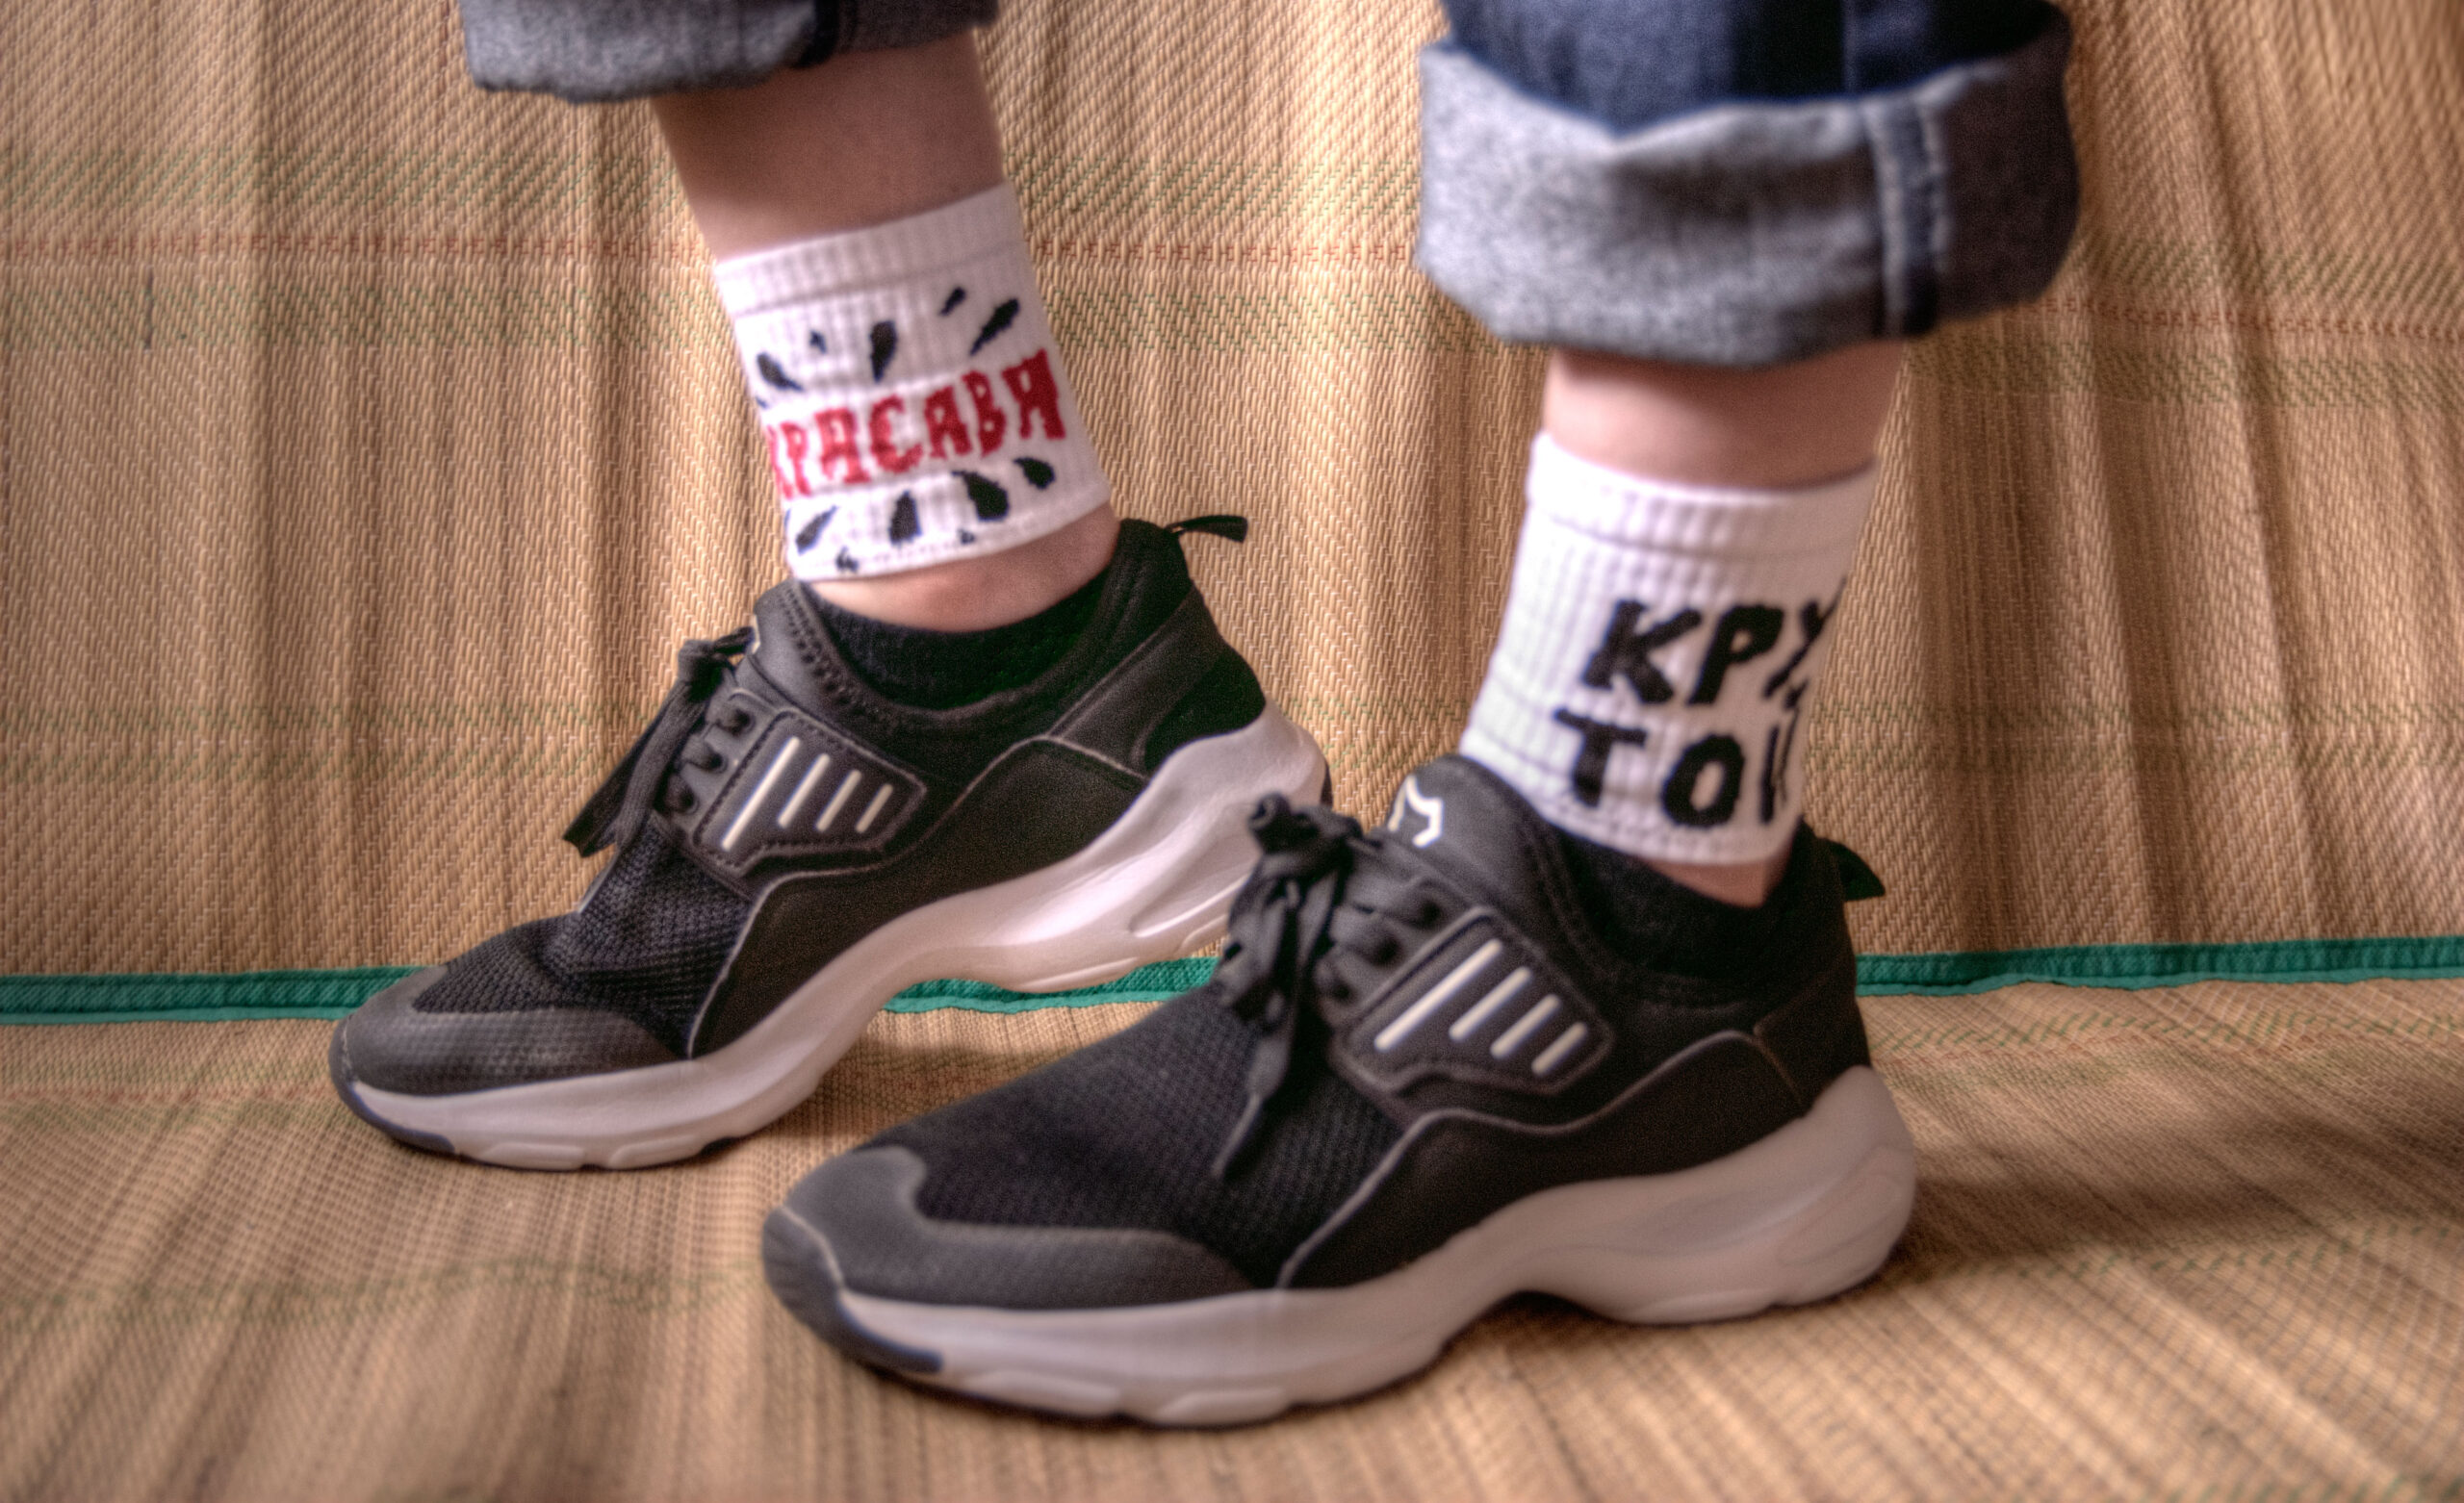 Неноски St.Friday Socks, кроссовки "Котофей", невидимые носки Omsa. Фото: bracatuS.com